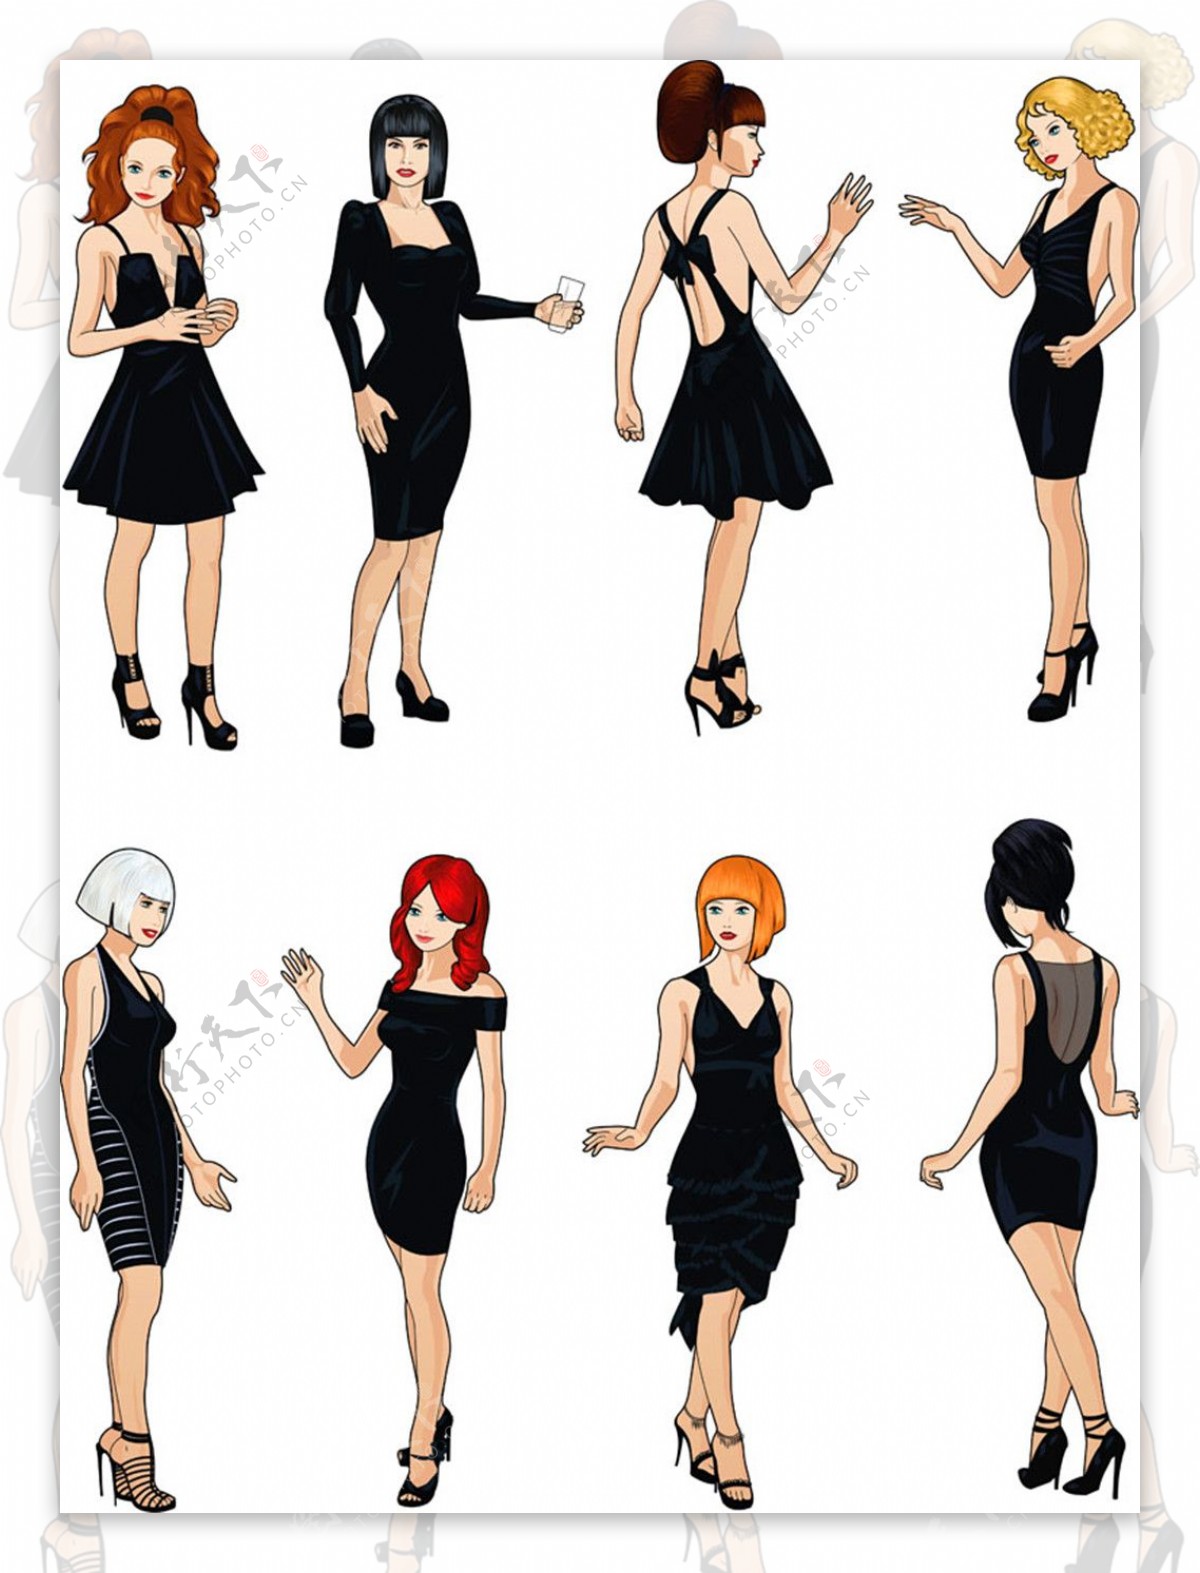 黑色裙子美女插画图片